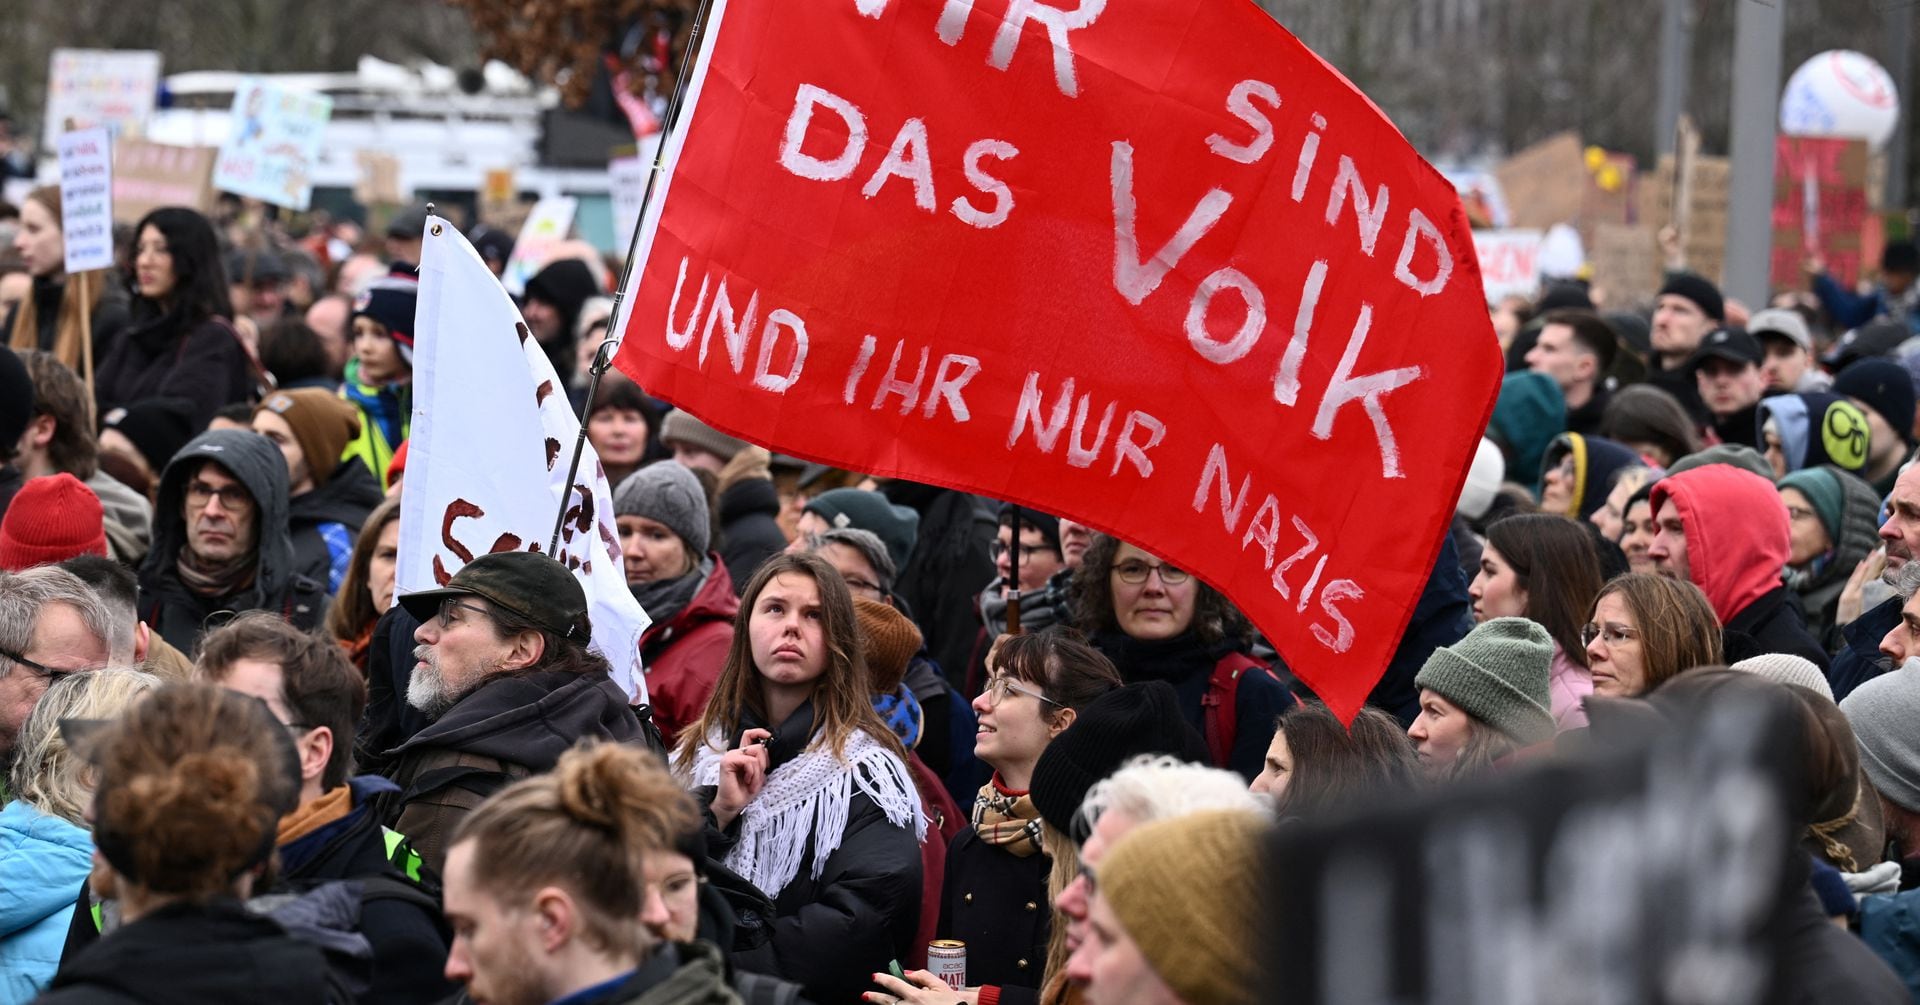 ドイツ、極右台頭に約20万人が抗議 首相「民主主義支持の表れ」